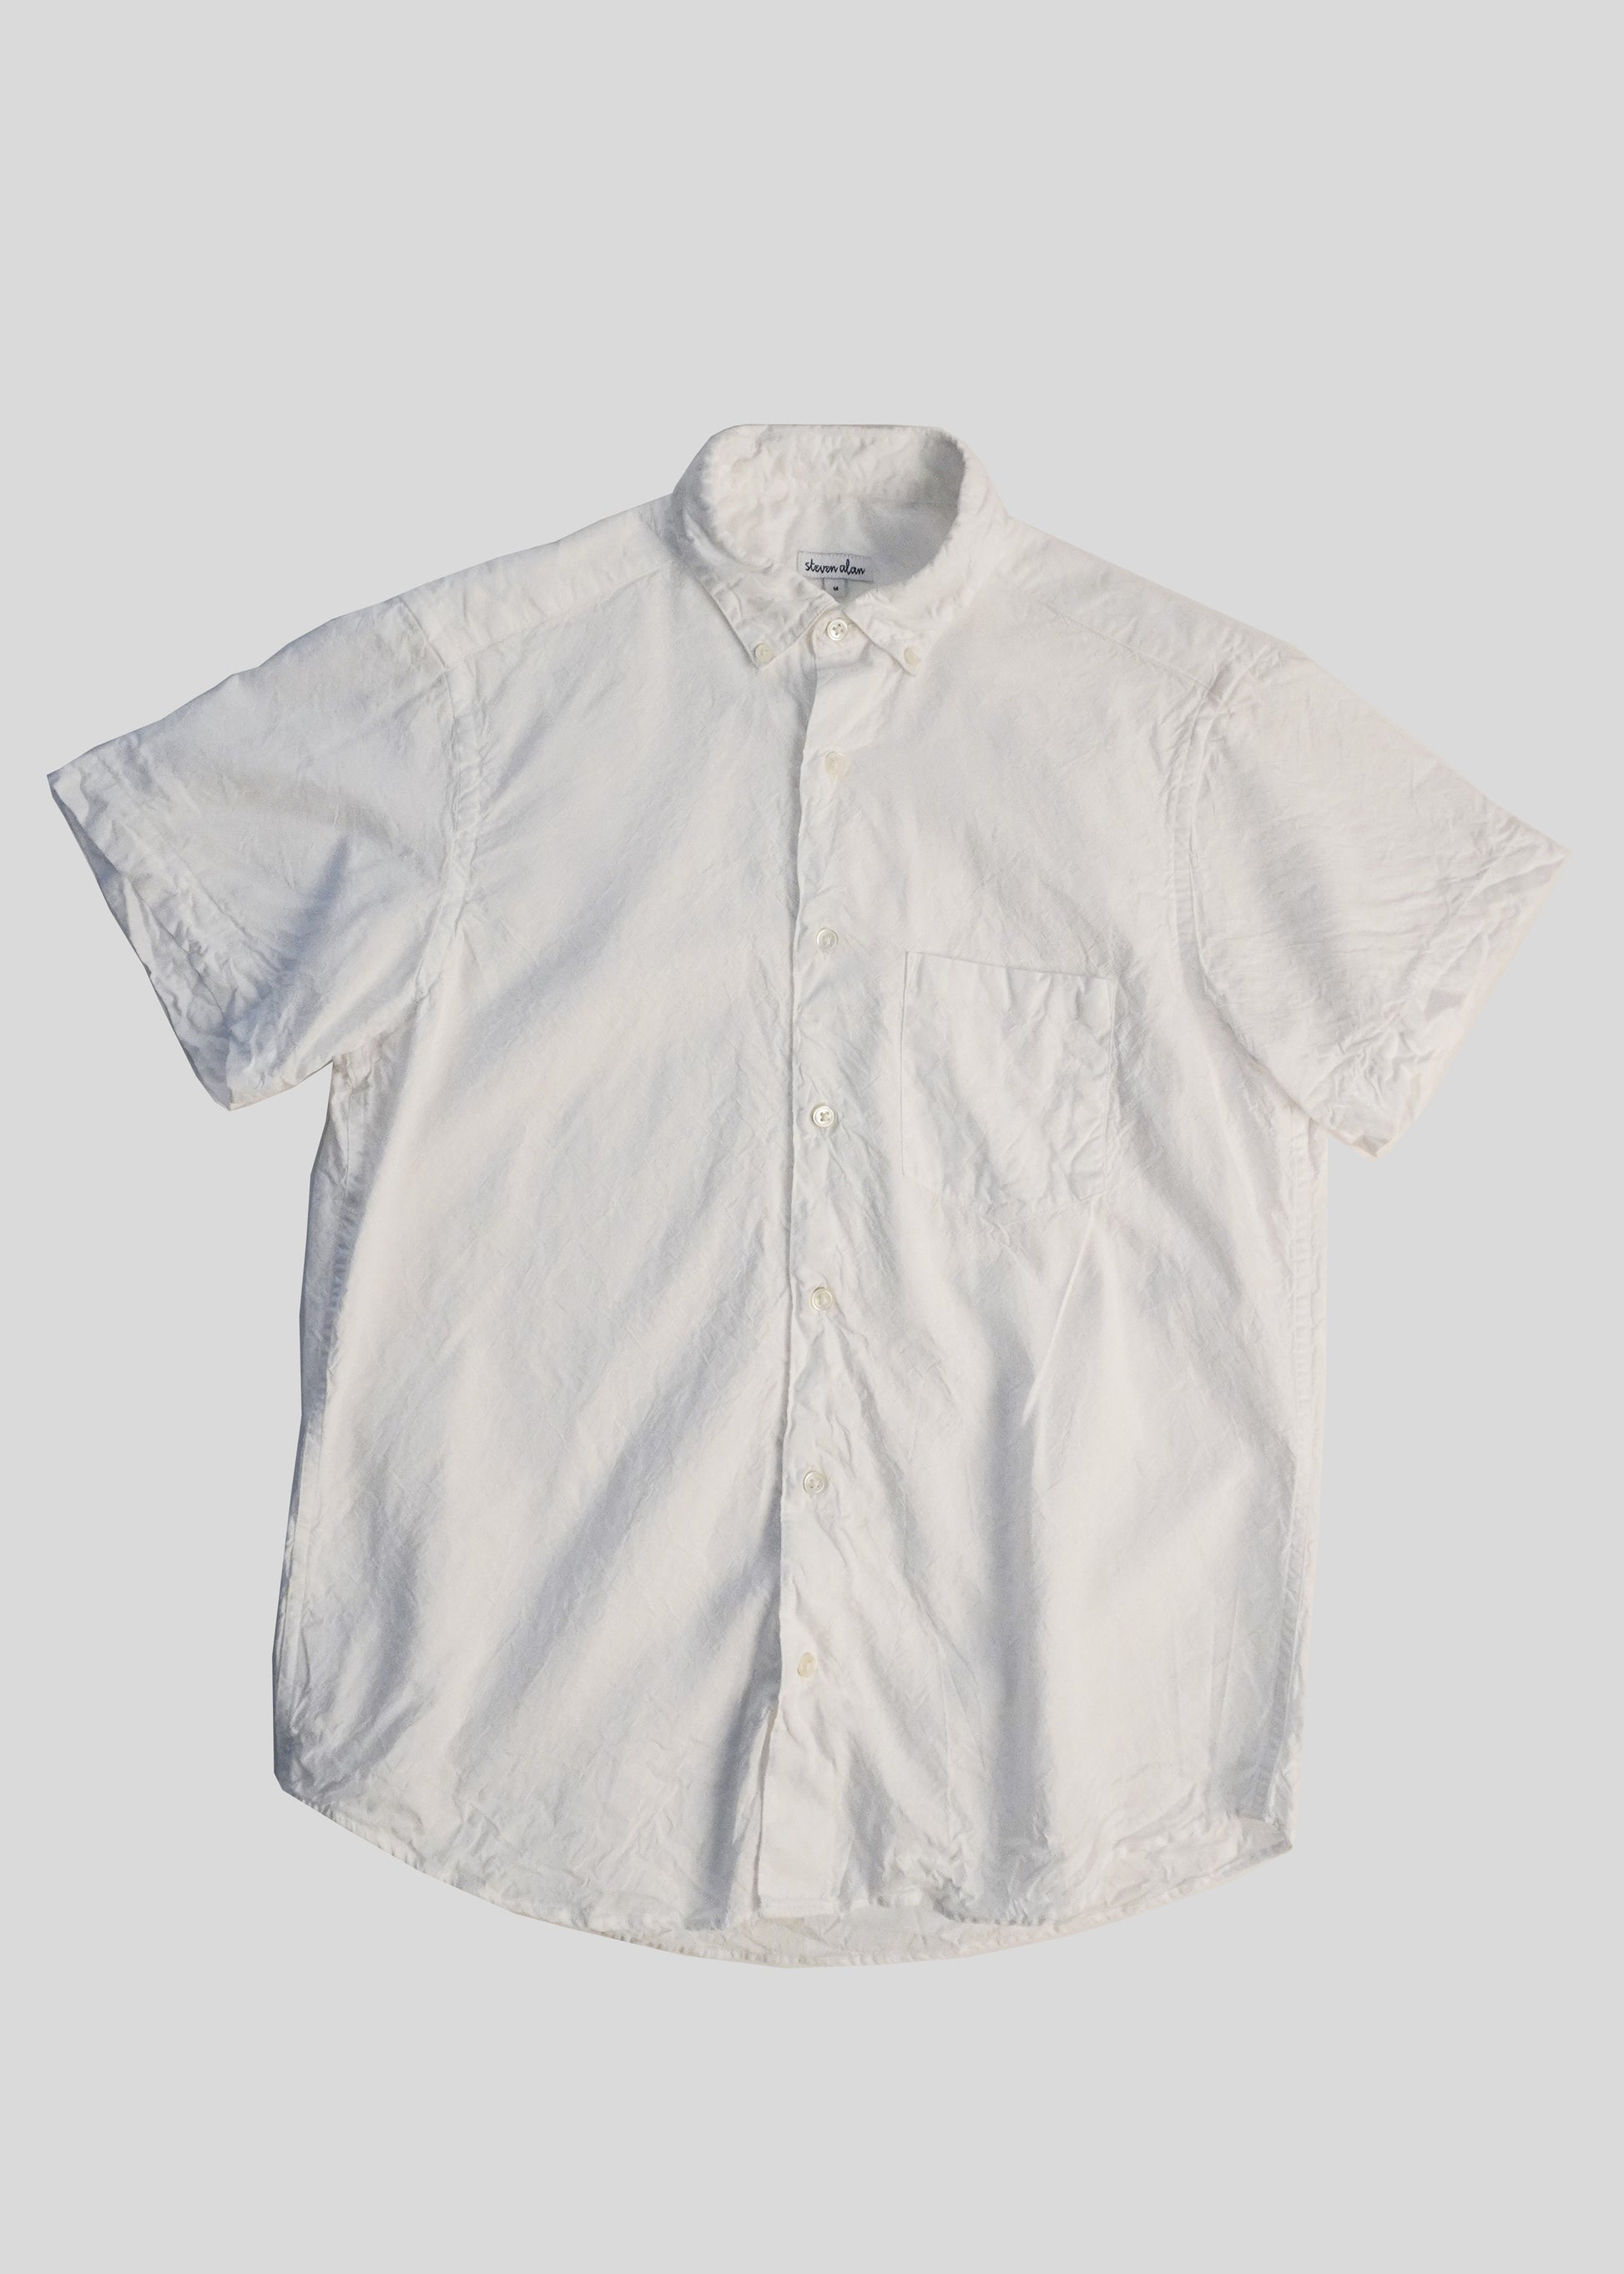 Short Sleeve Single Needle Shirt, White Crinkle Cotton – Steven Alan